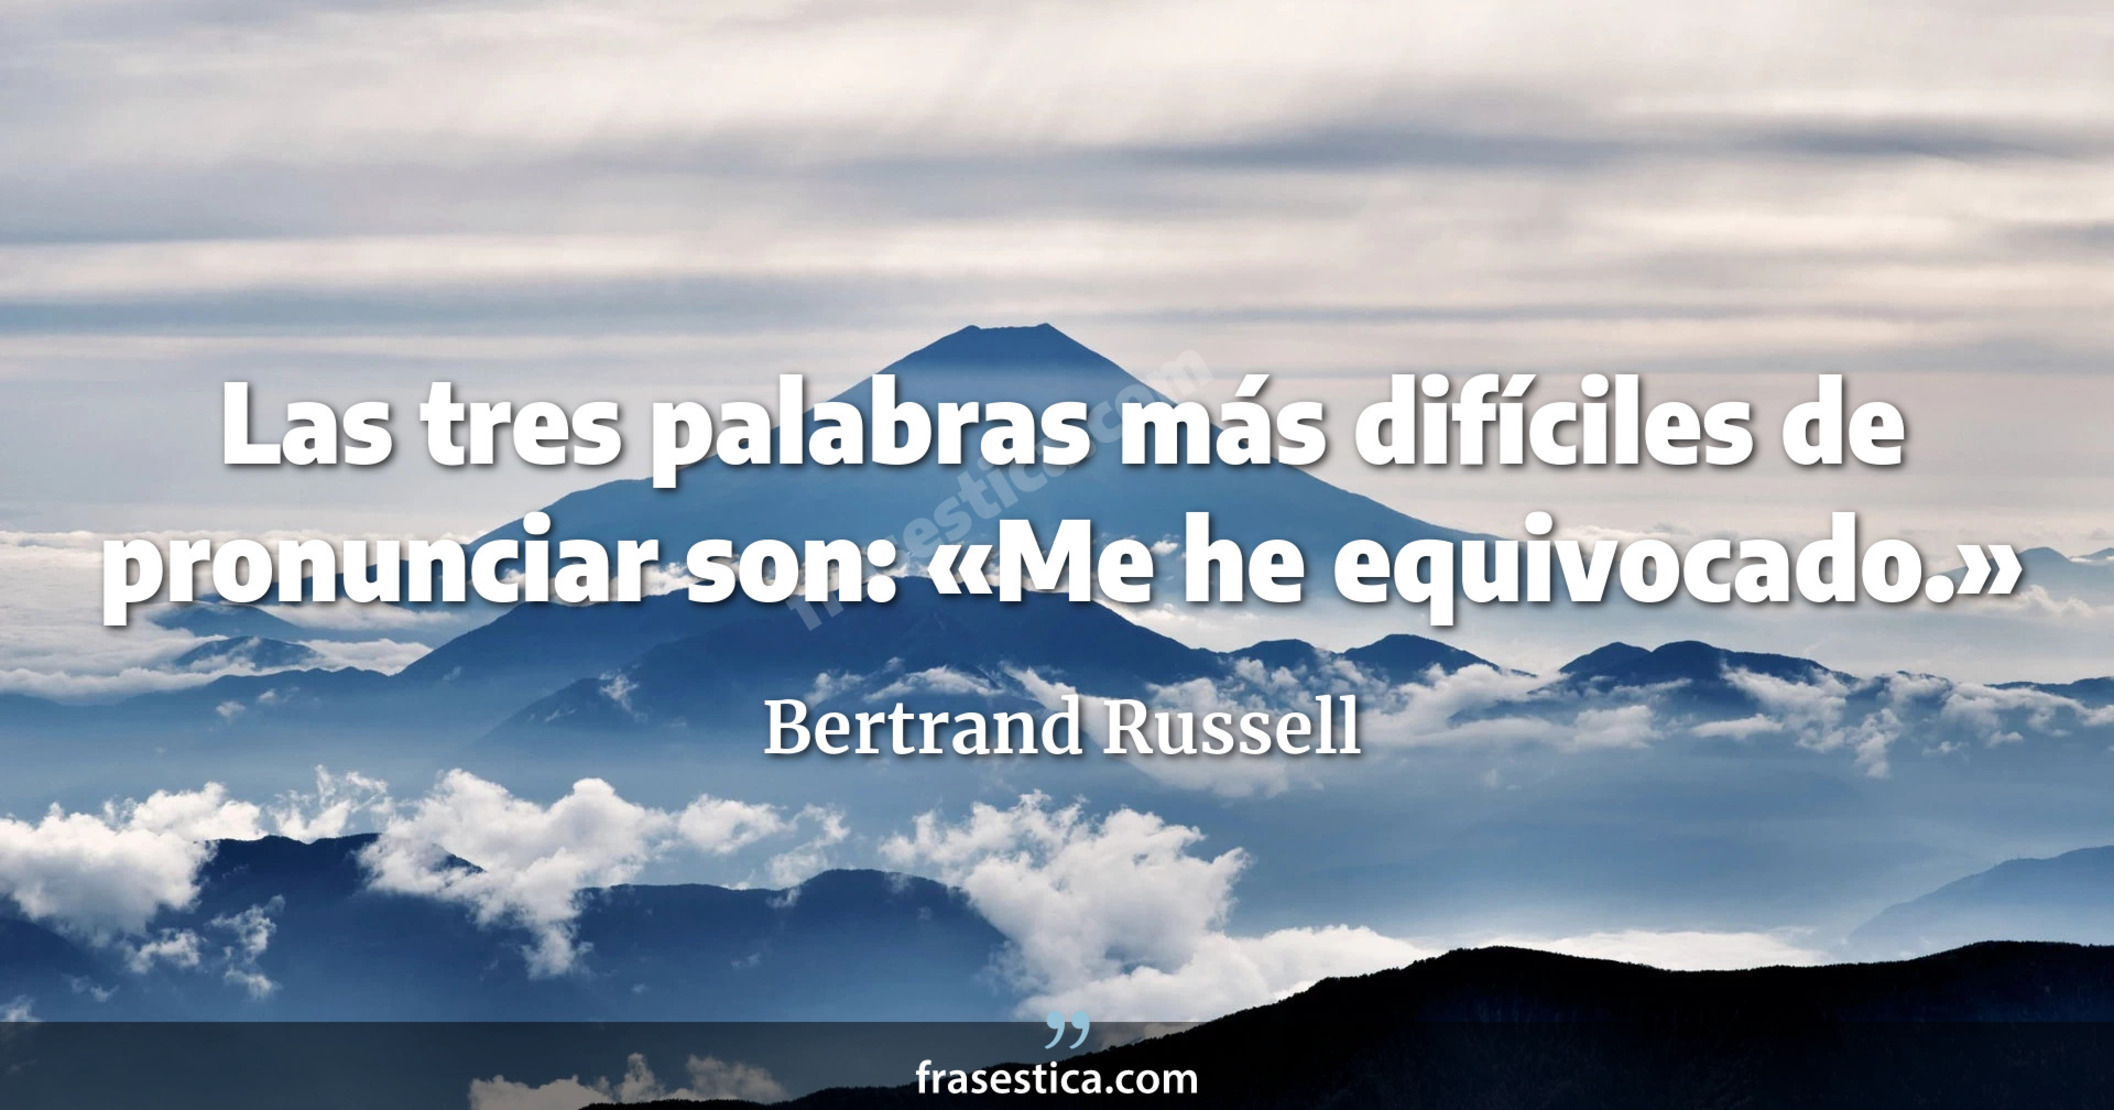 Las tres palabras más difíciles de pronunciar son: «Me he equivocado.» - Bertrand Russell